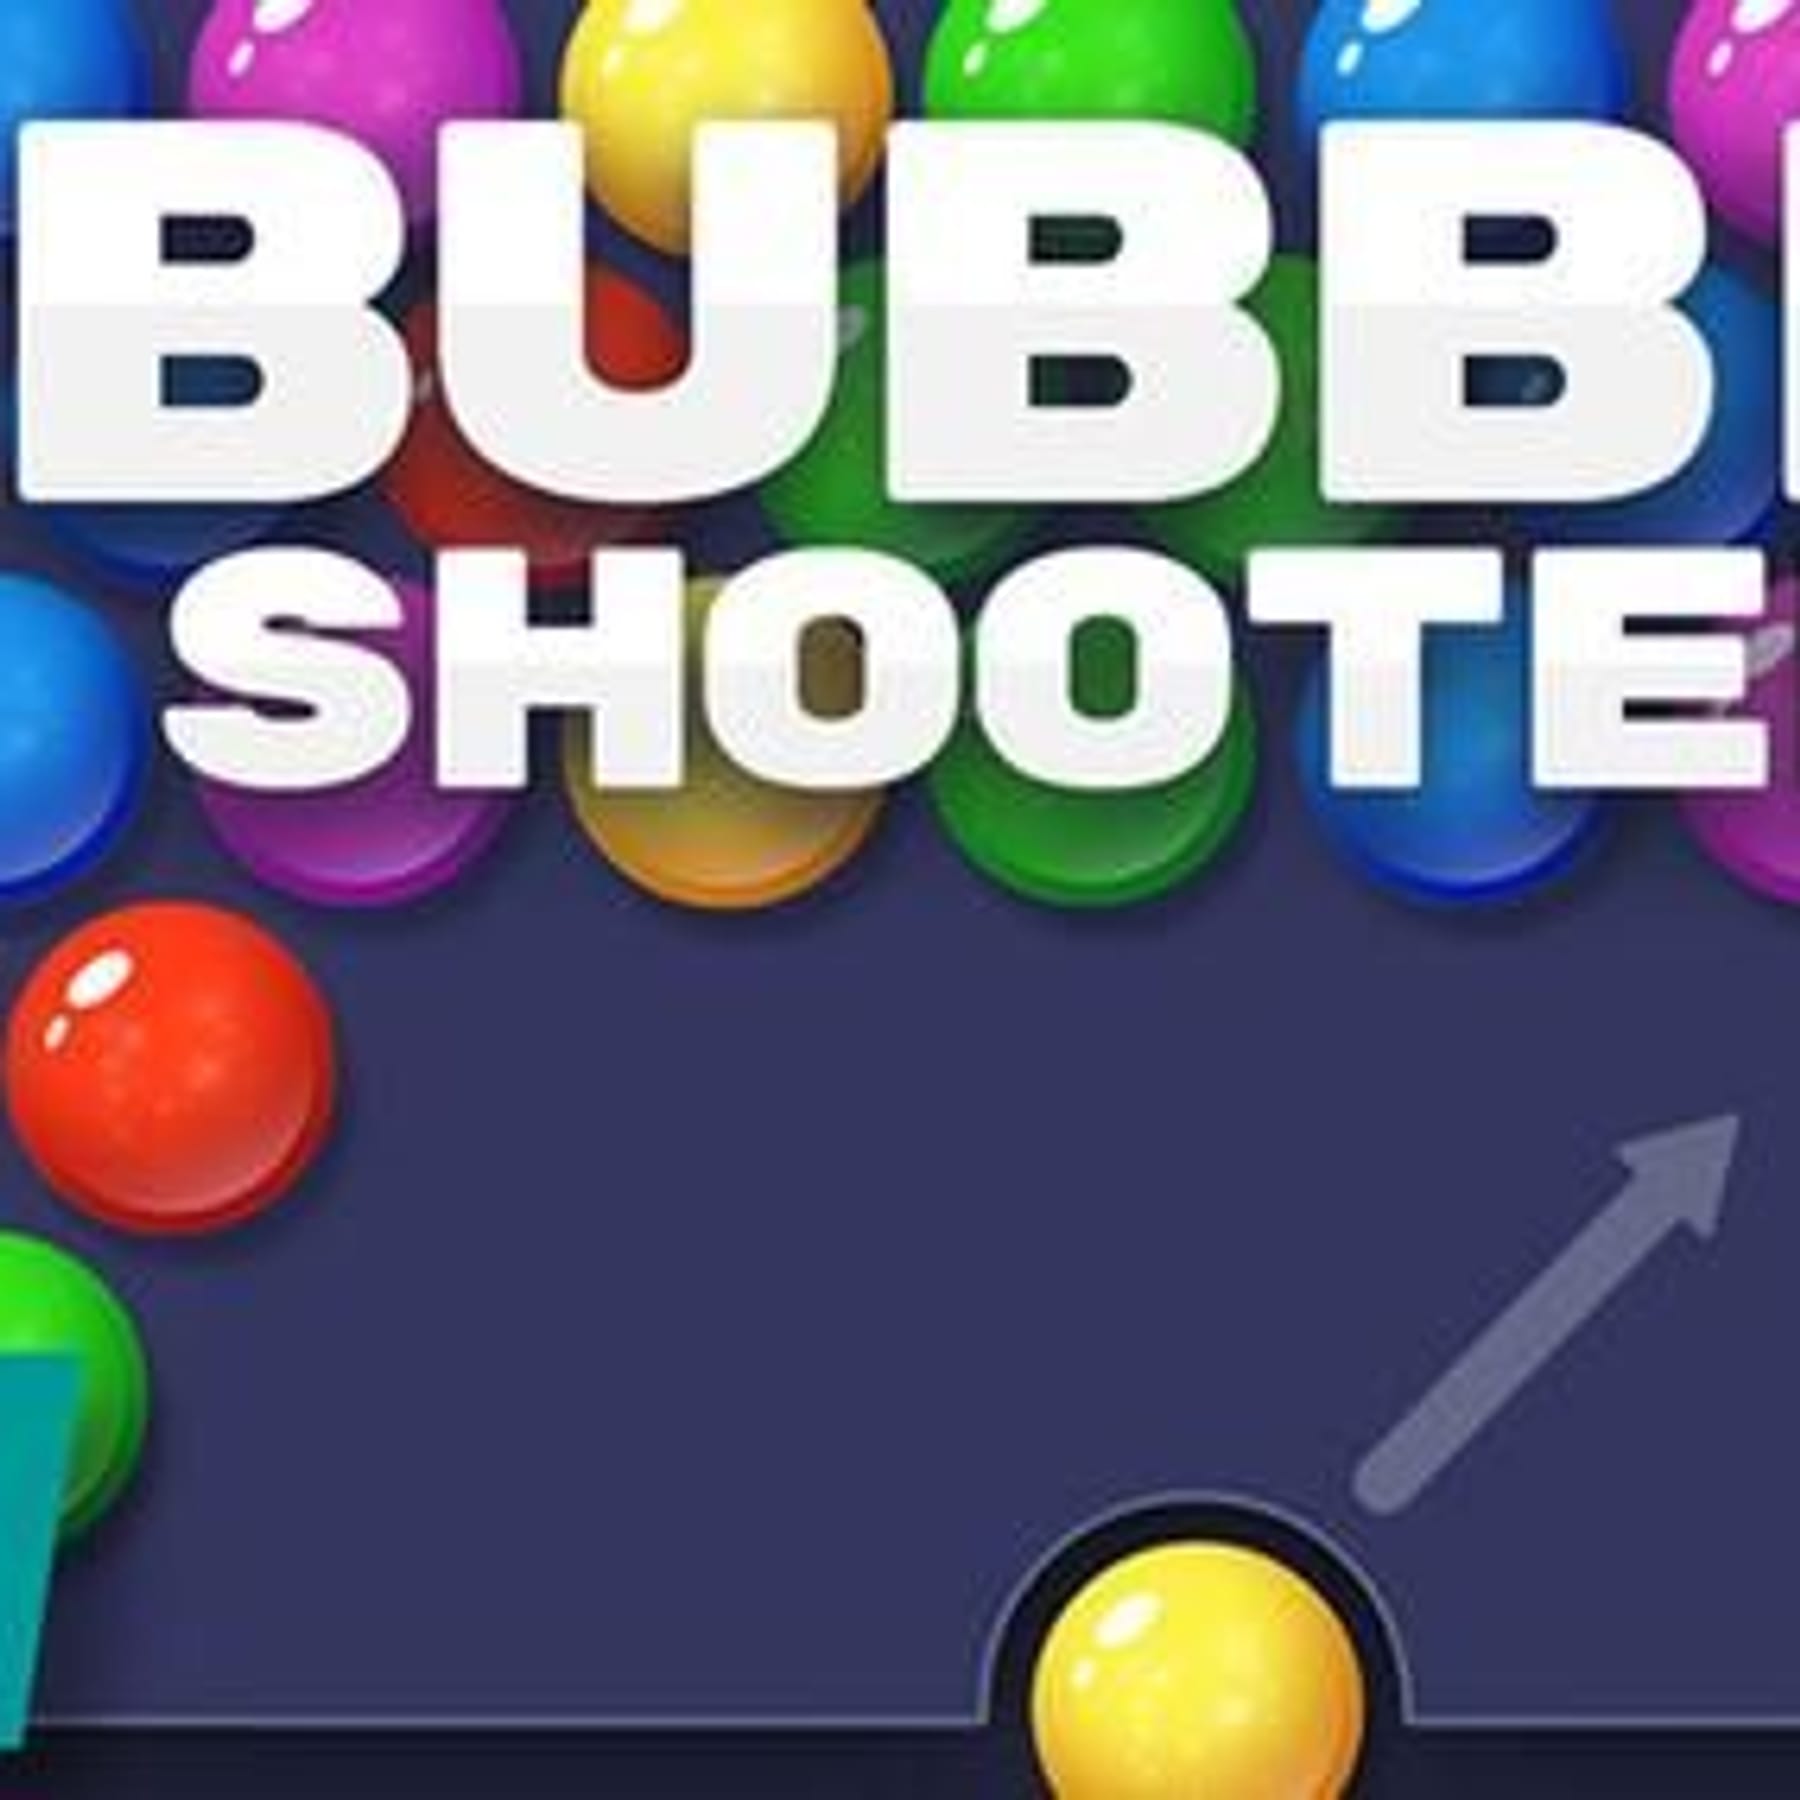 Bubble Shooter HD kostenlos spielen bei RTLspiele.de